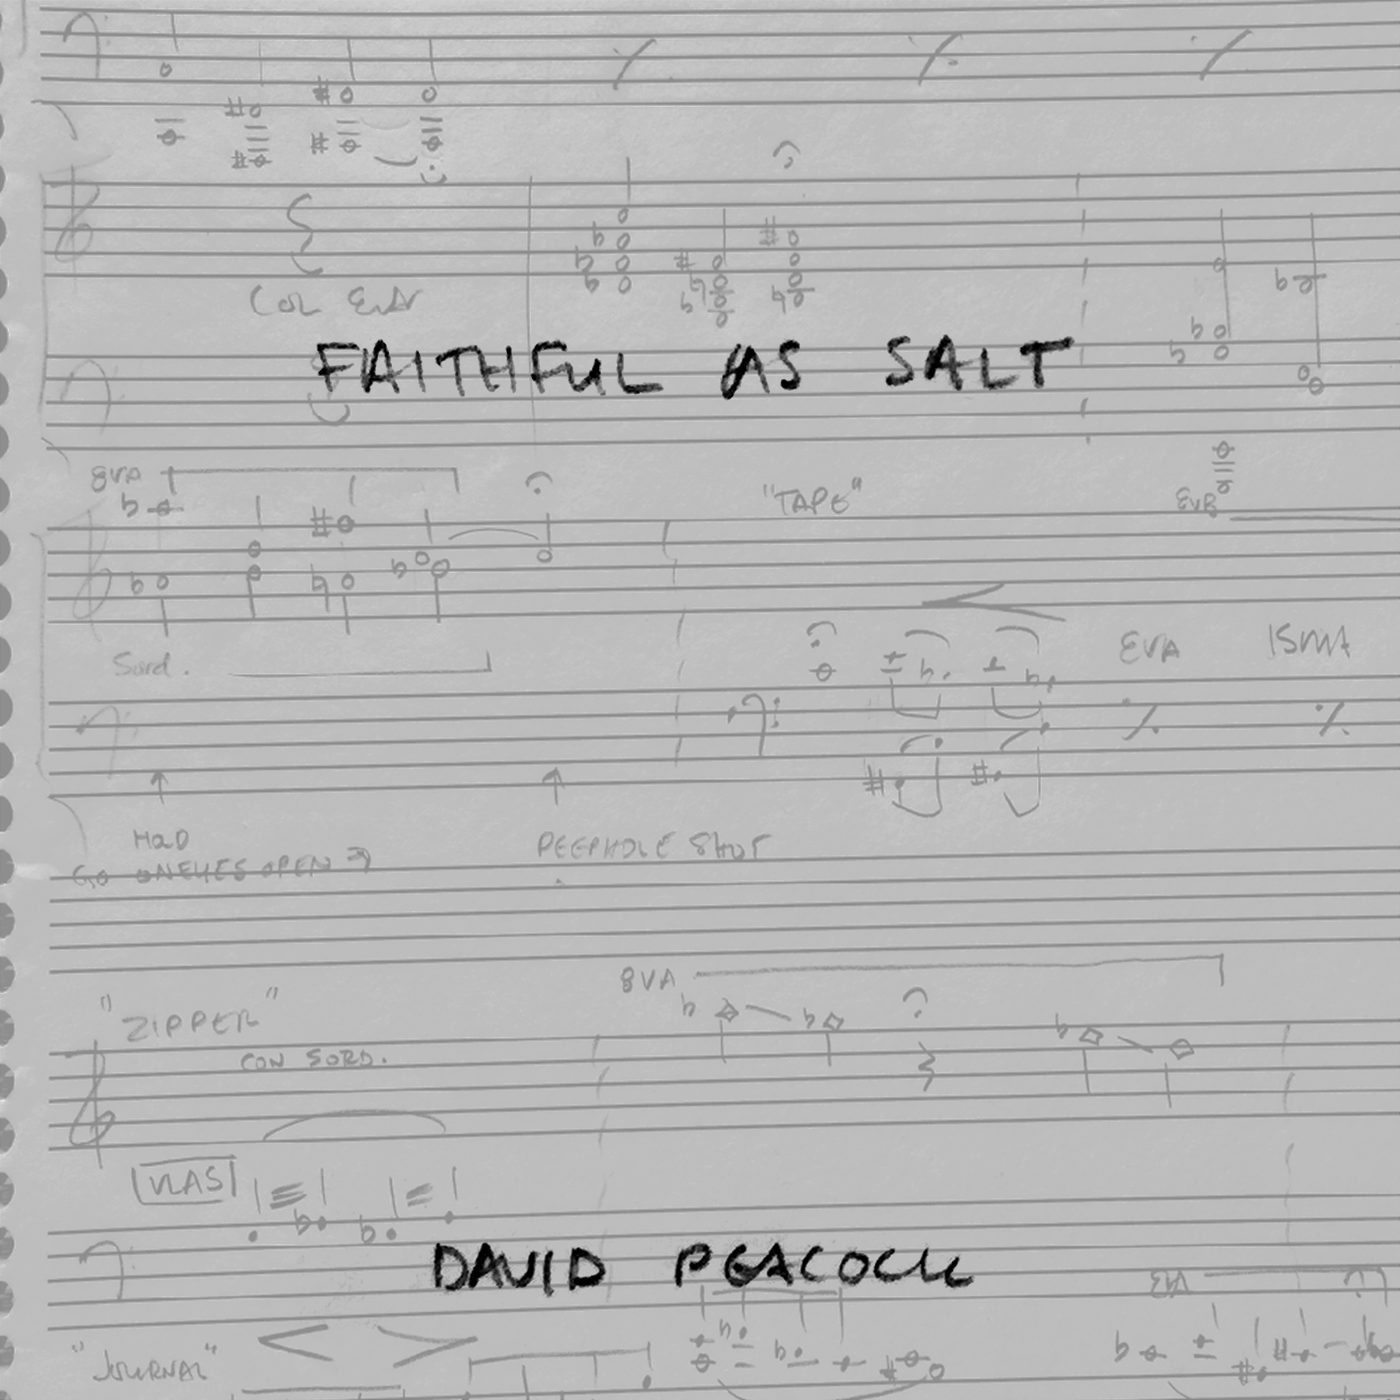 Faithful as Salt (Original Score)